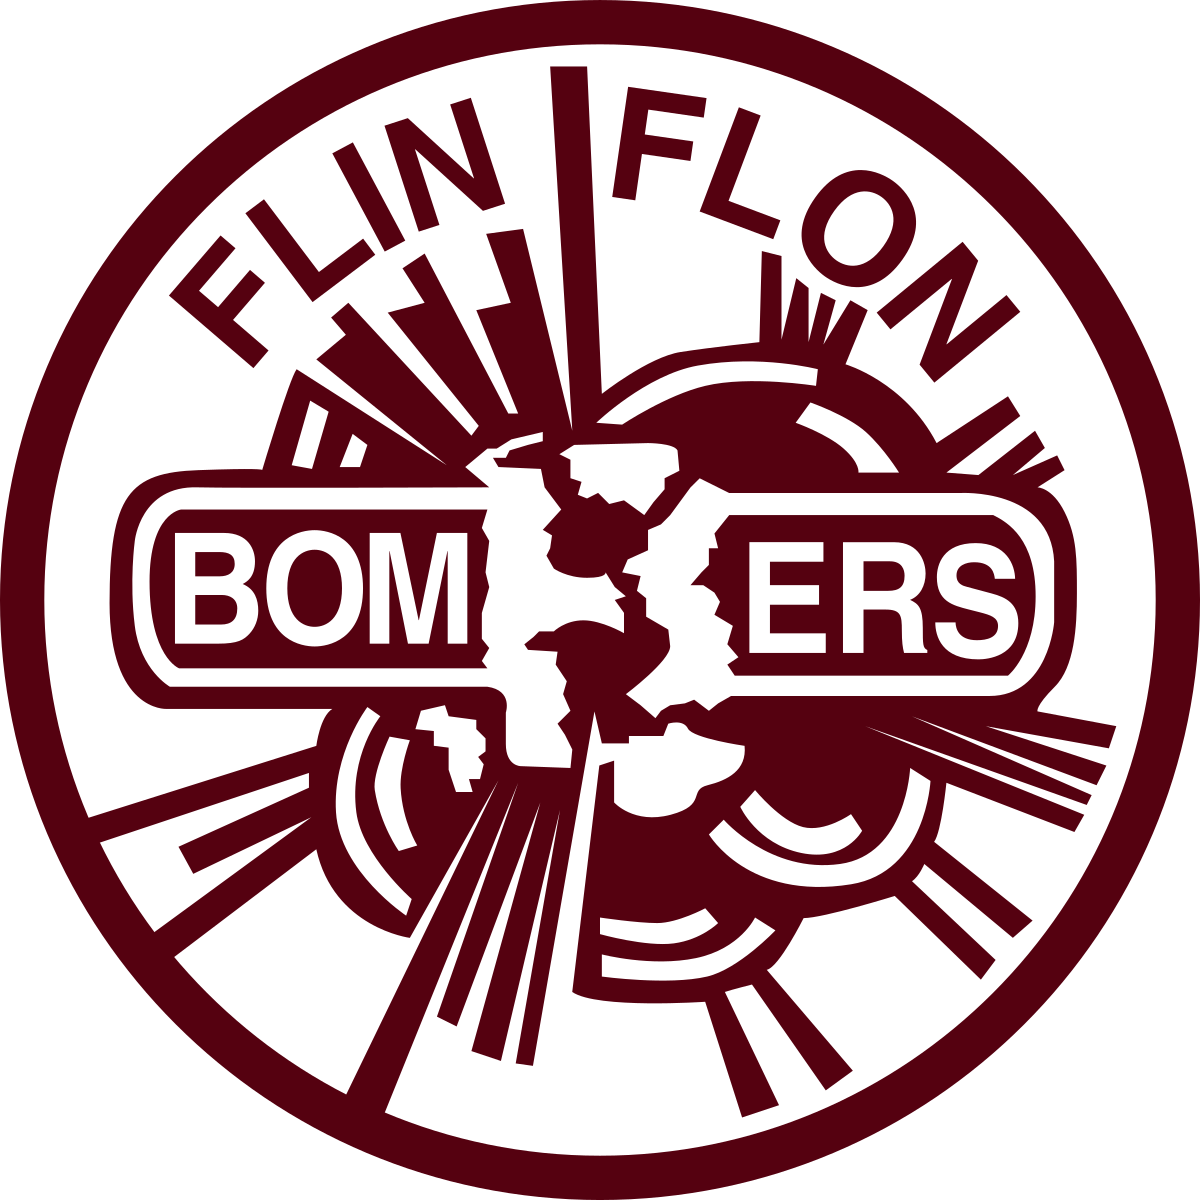 Flin Flon Bombers 23/24 Season Preview 